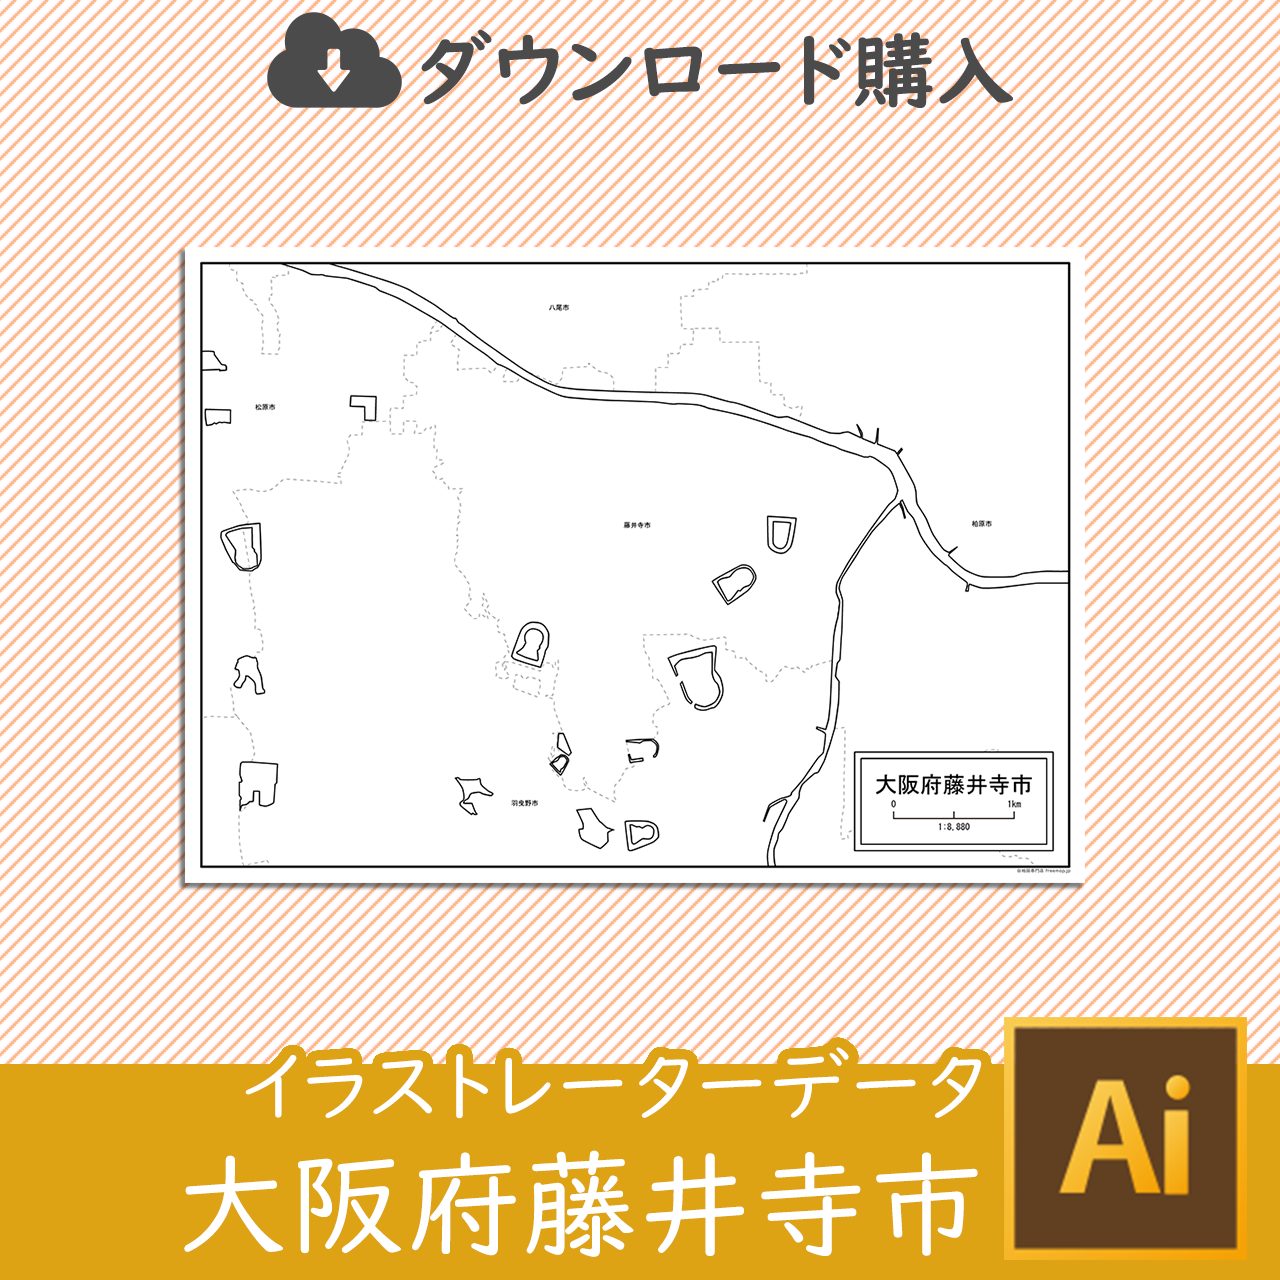 藤井寺市のaiデータのサムネイル画像